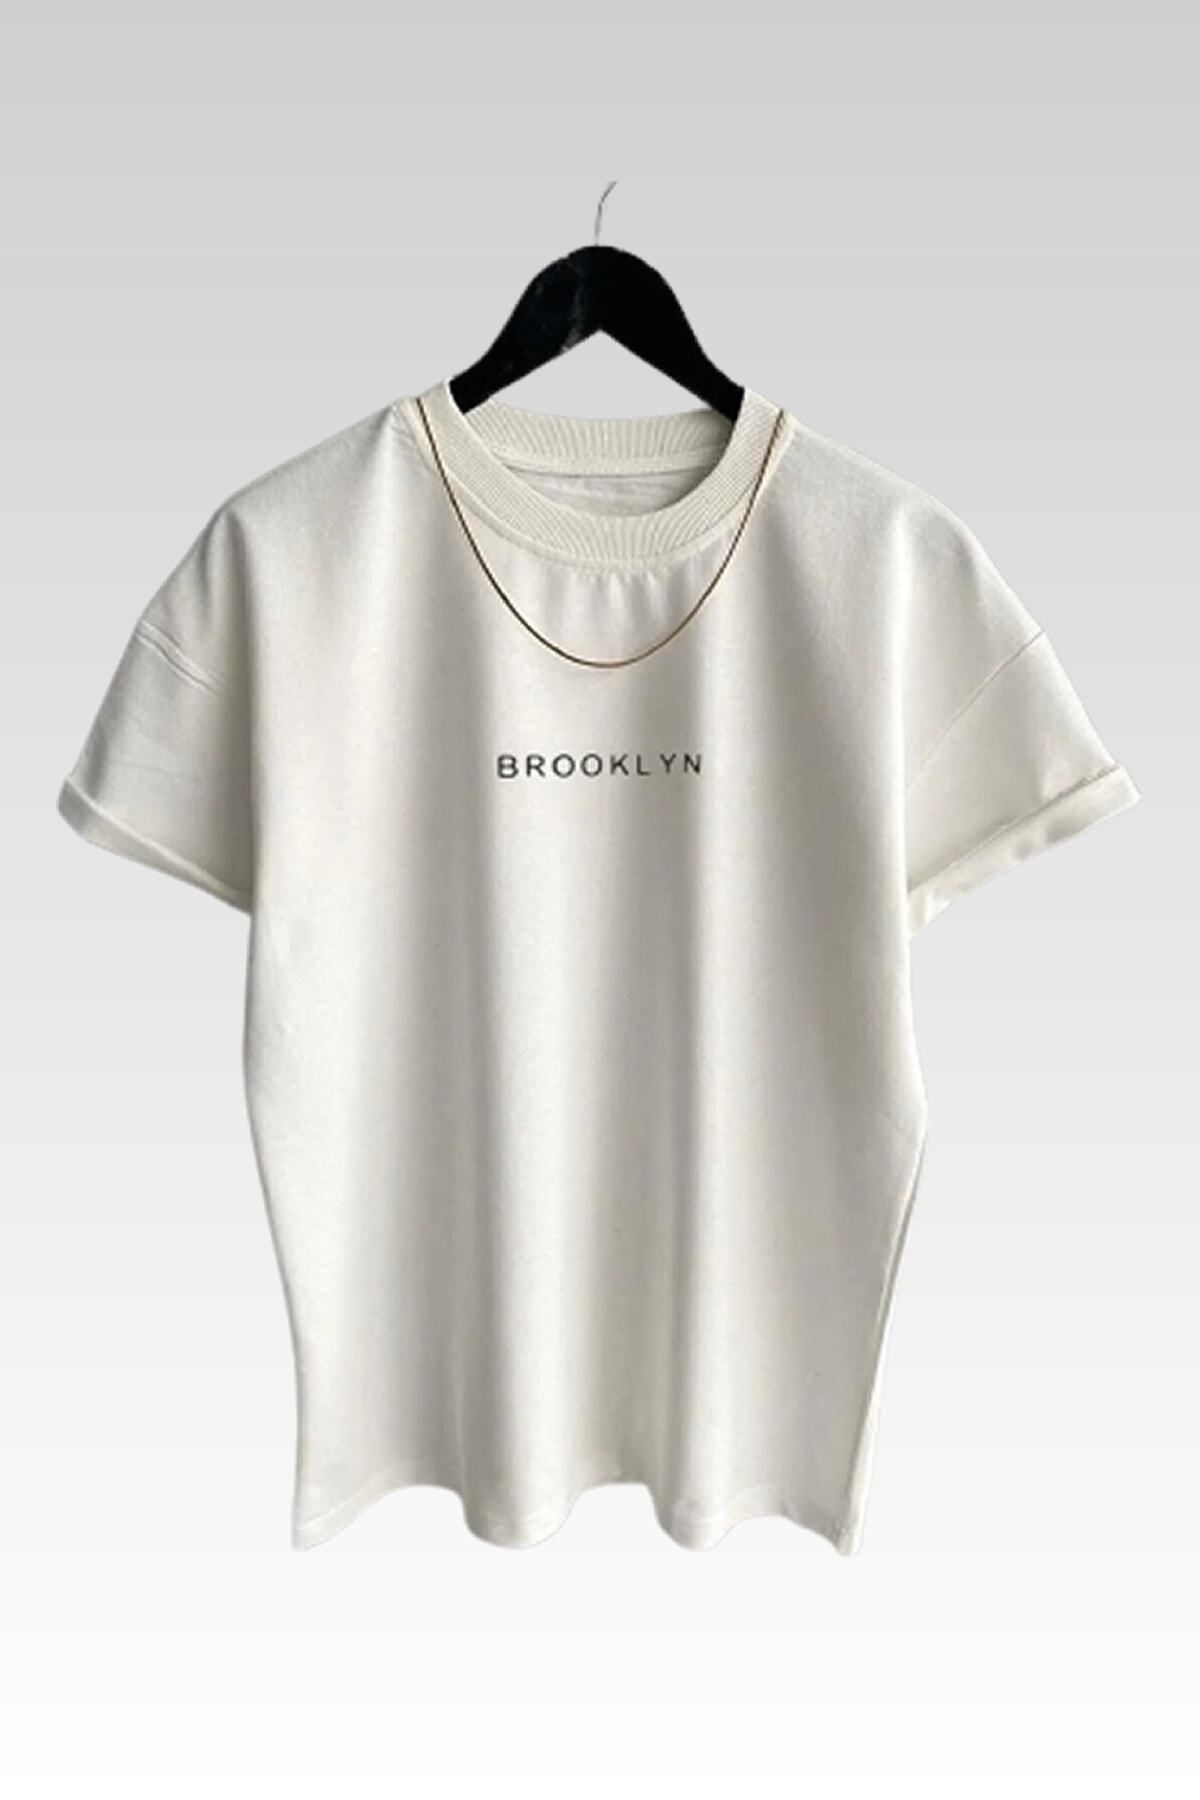 NİCE - Unisex Brooklyn Baskılı Beyaz T-shirt